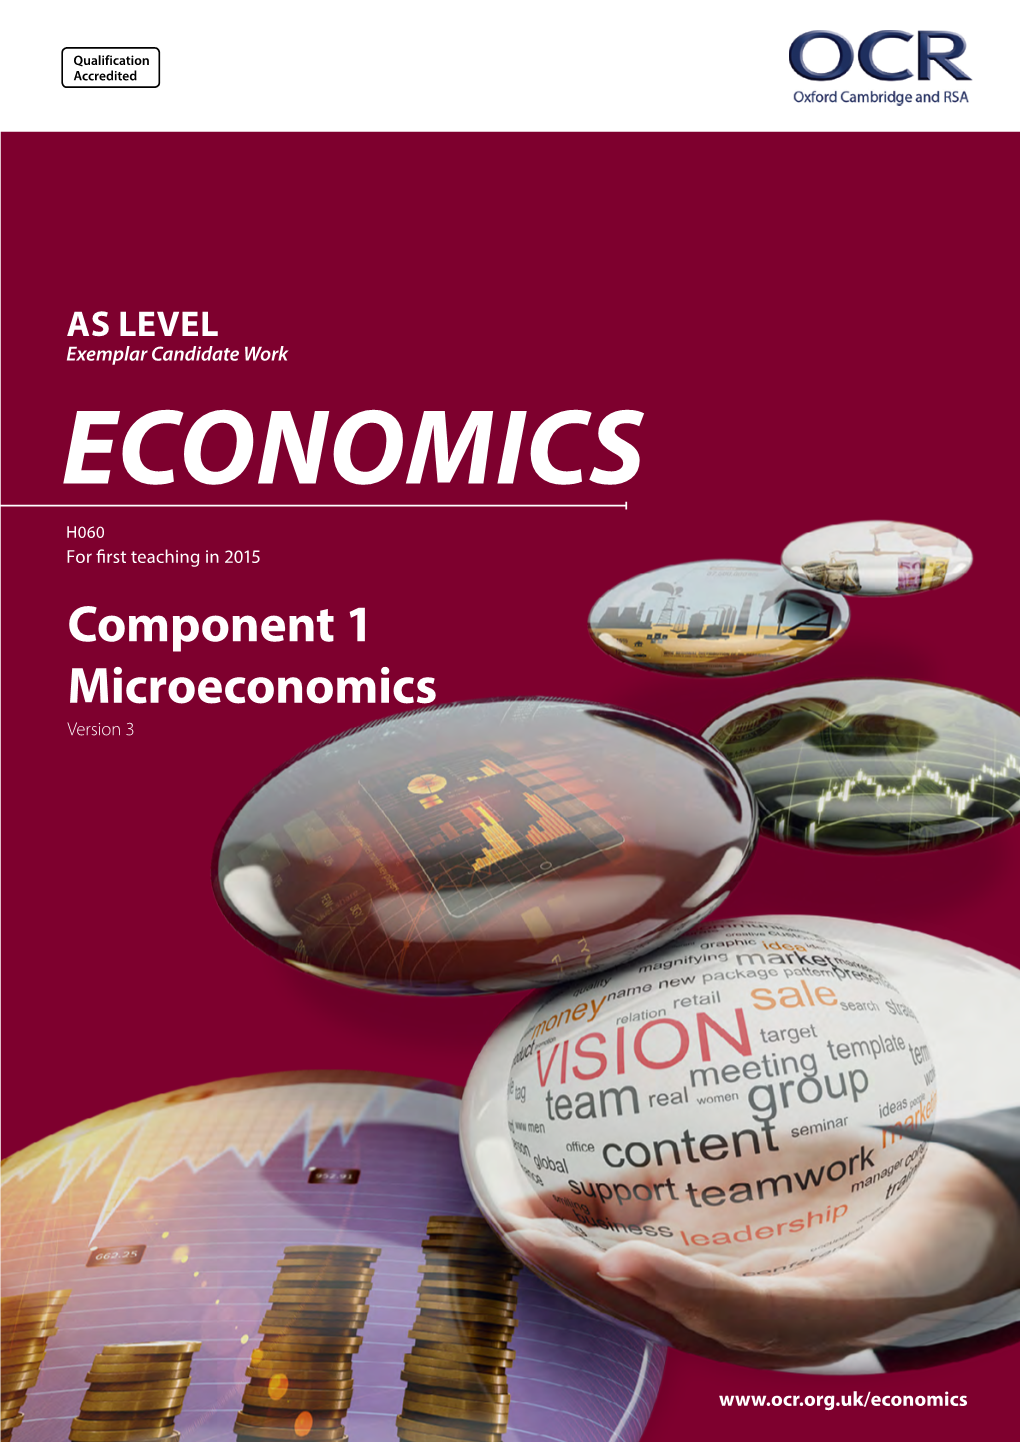 Microeconomics Version 3